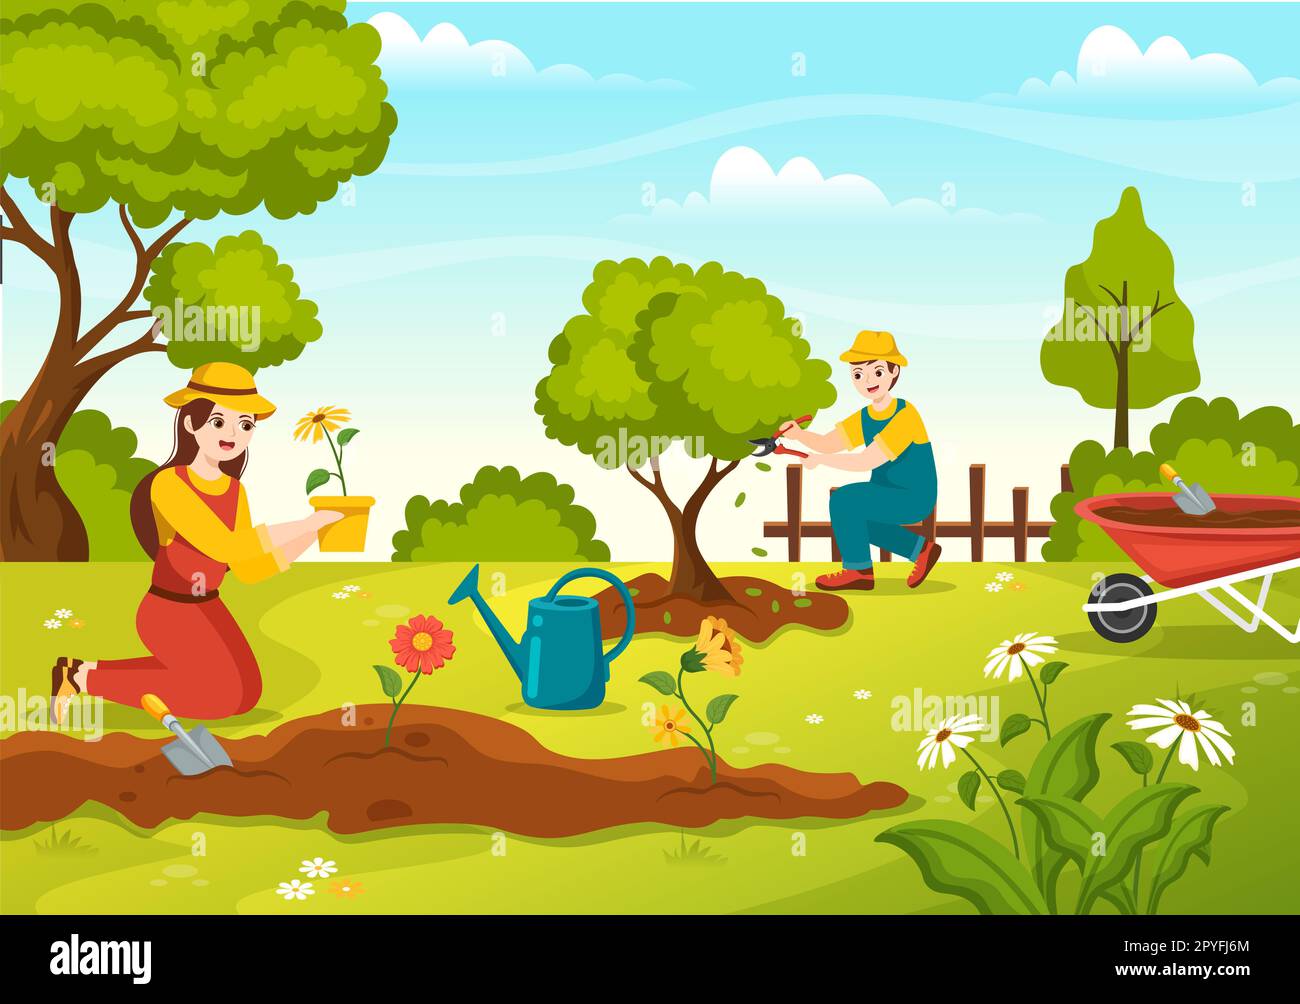 Illustration de jardinier avec les outils de jardin, l'agriculture, pousse des légumes en botanique d'été Gardening plat dessin main pour les modèles de page d'arrivée Banque D'Images